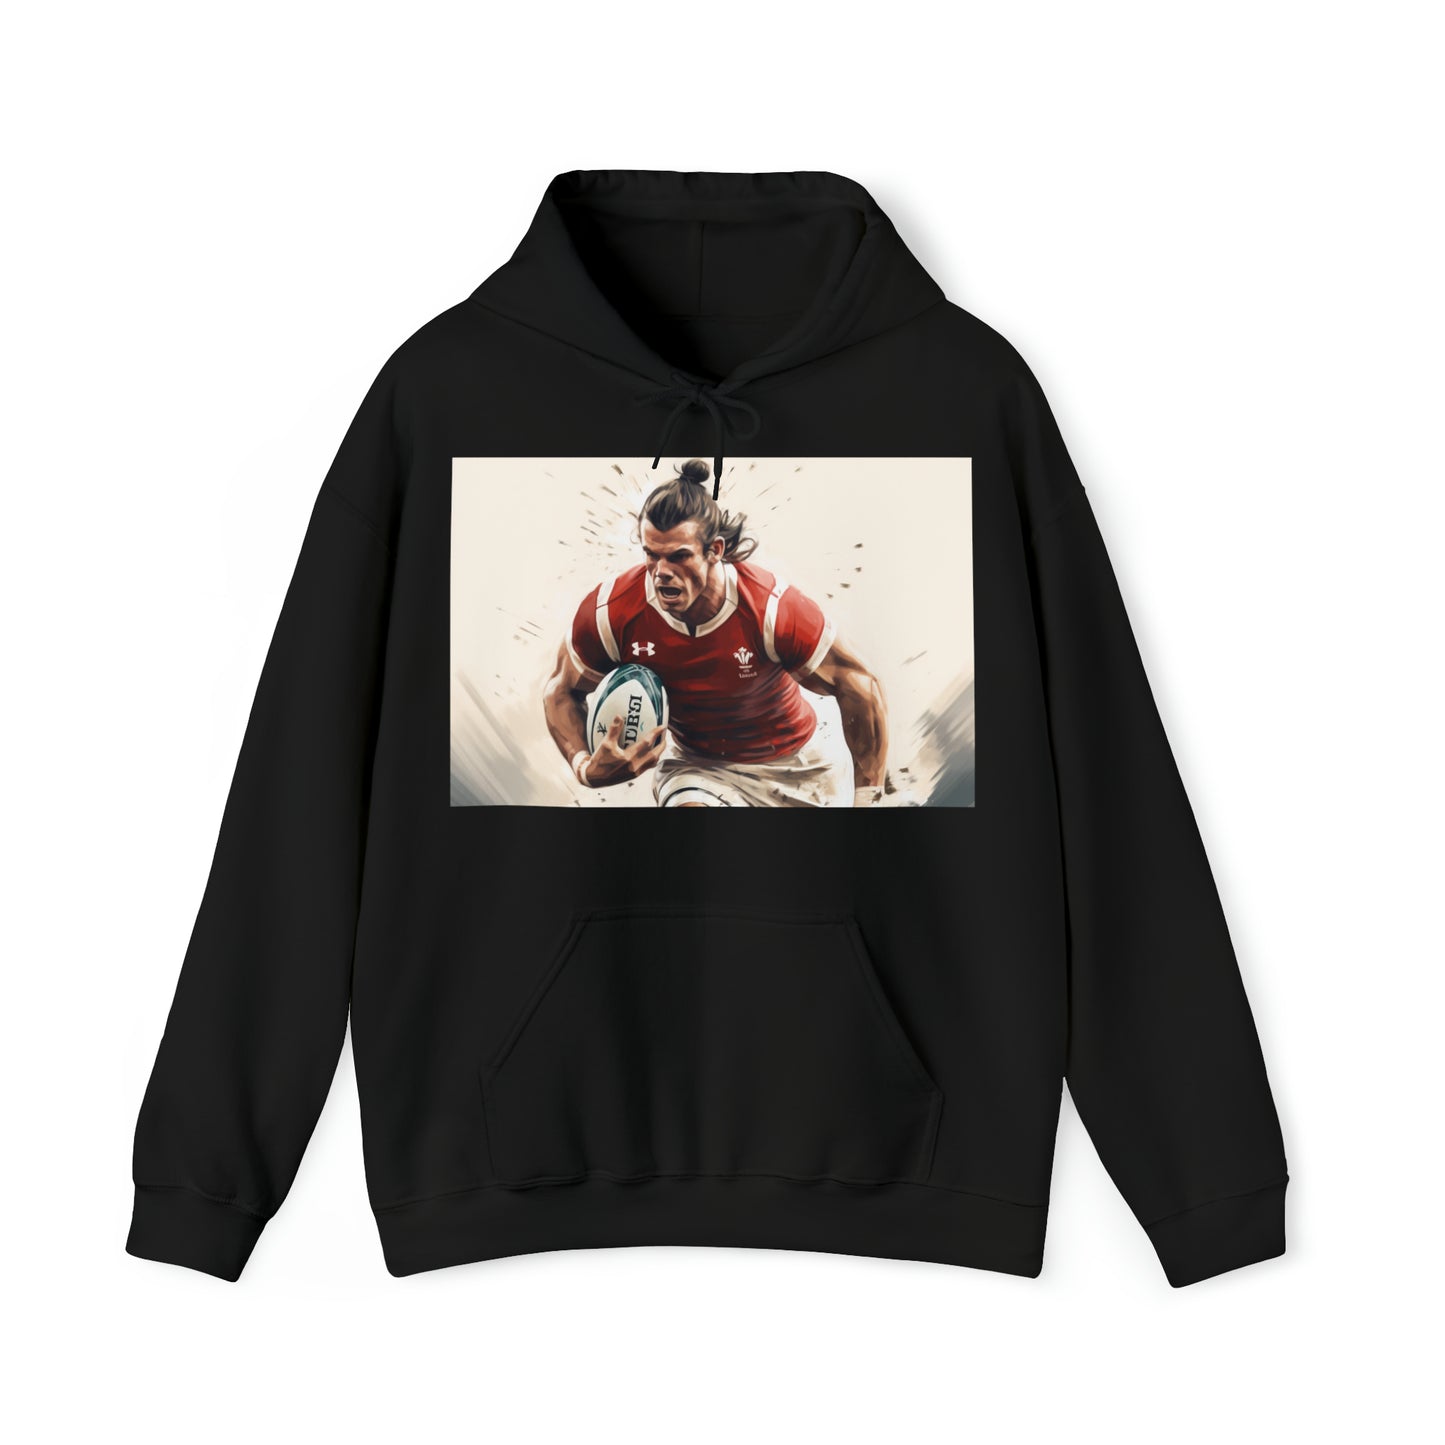 Running Bale - dark hoodies